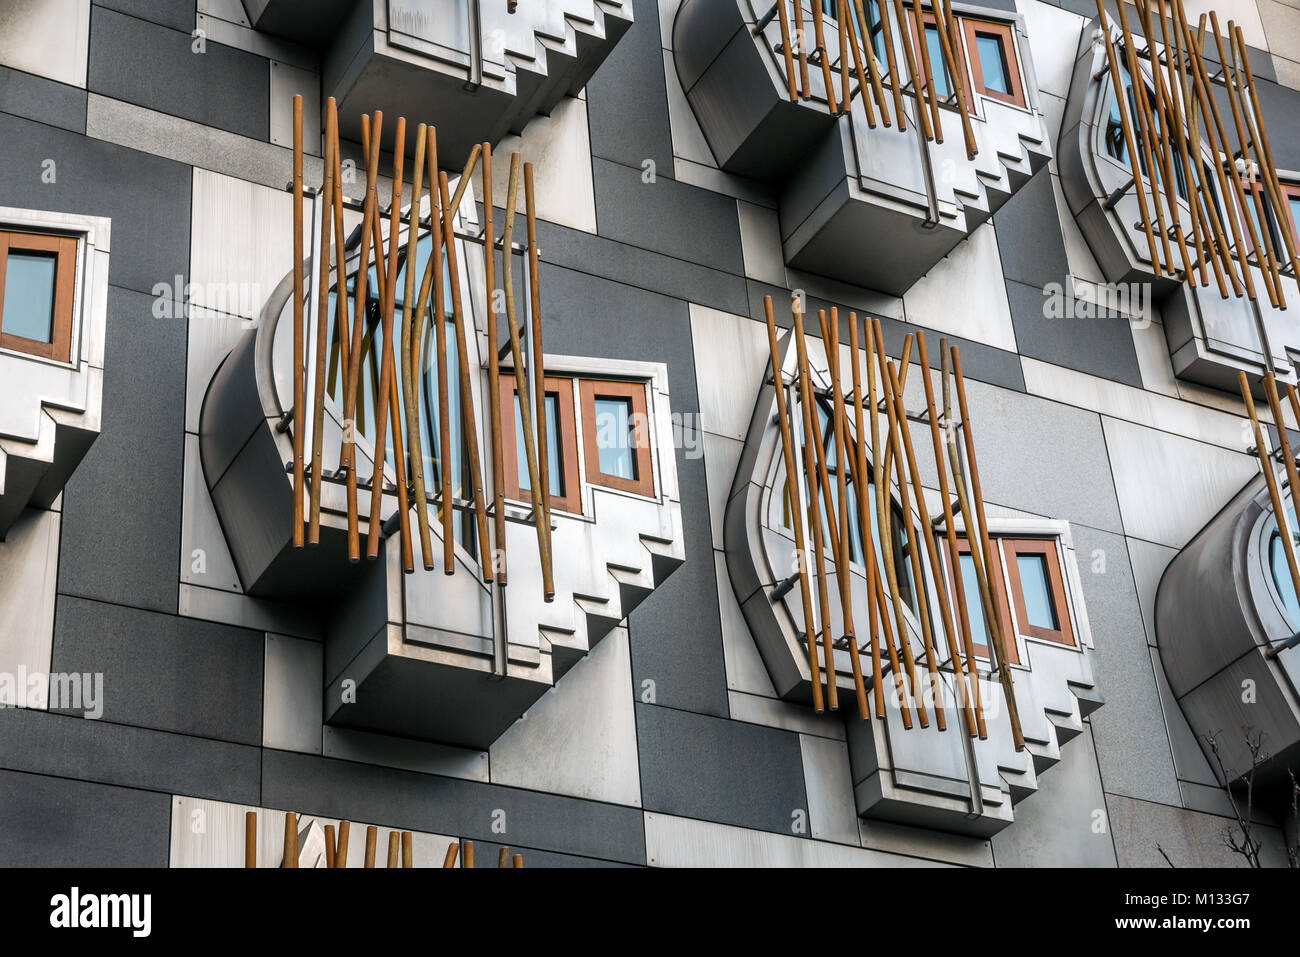 Pensate a cialde o spazi contemplativi nell'architettura moderna del parlamento Scozzese di Enric Mirales, Holyrood, Edimburgo, Scozia, Regno Unito Foto Stock